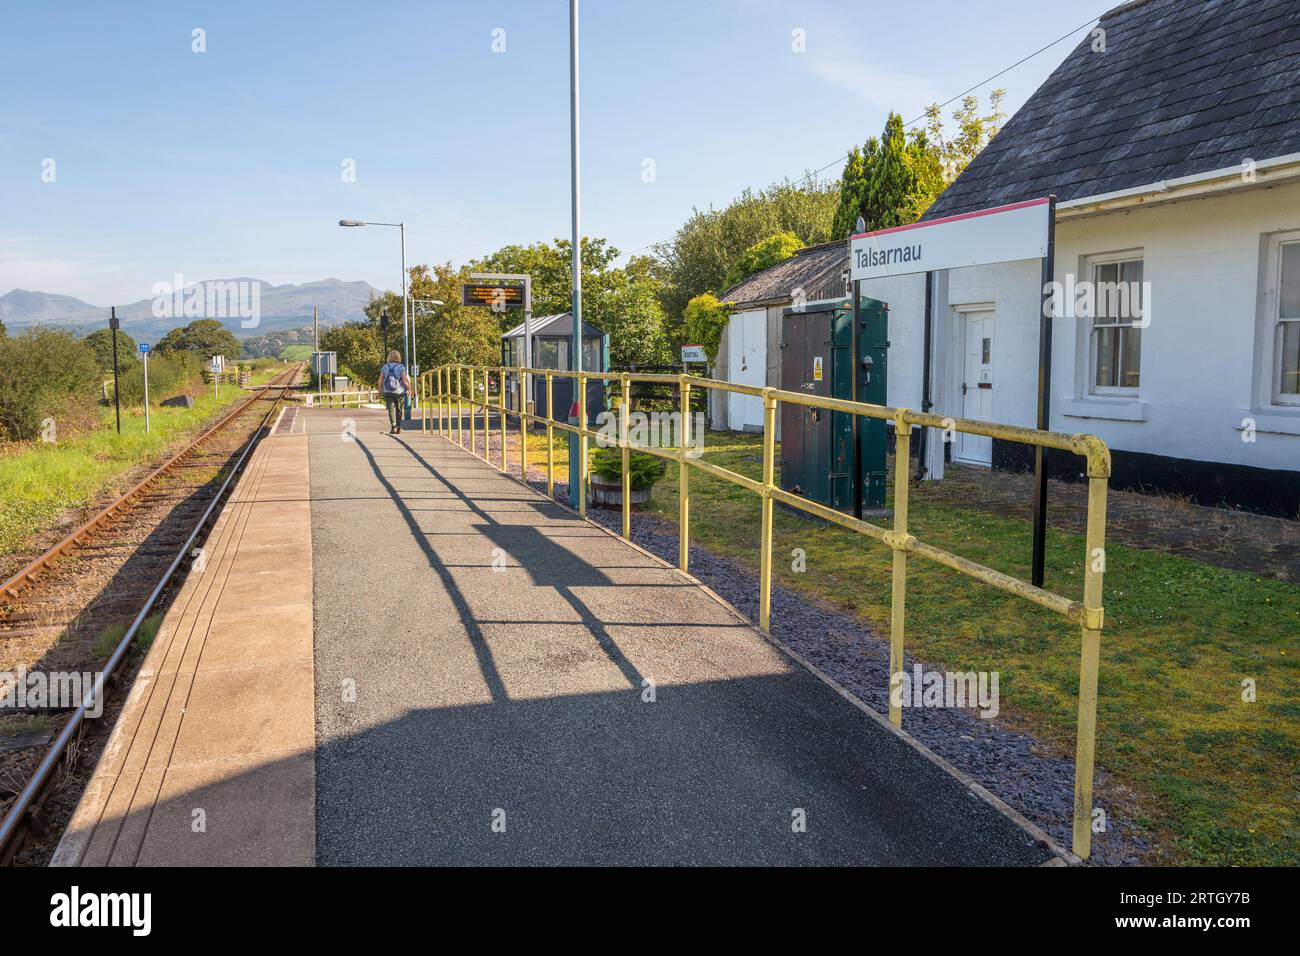 Die eingleisige Eisenbahnstrecke im kleinen walisischen Dorf Talsarnau, Gwynedd, ist Teil des Eisenbahnnetzes Transport for Wales. Stockfoto